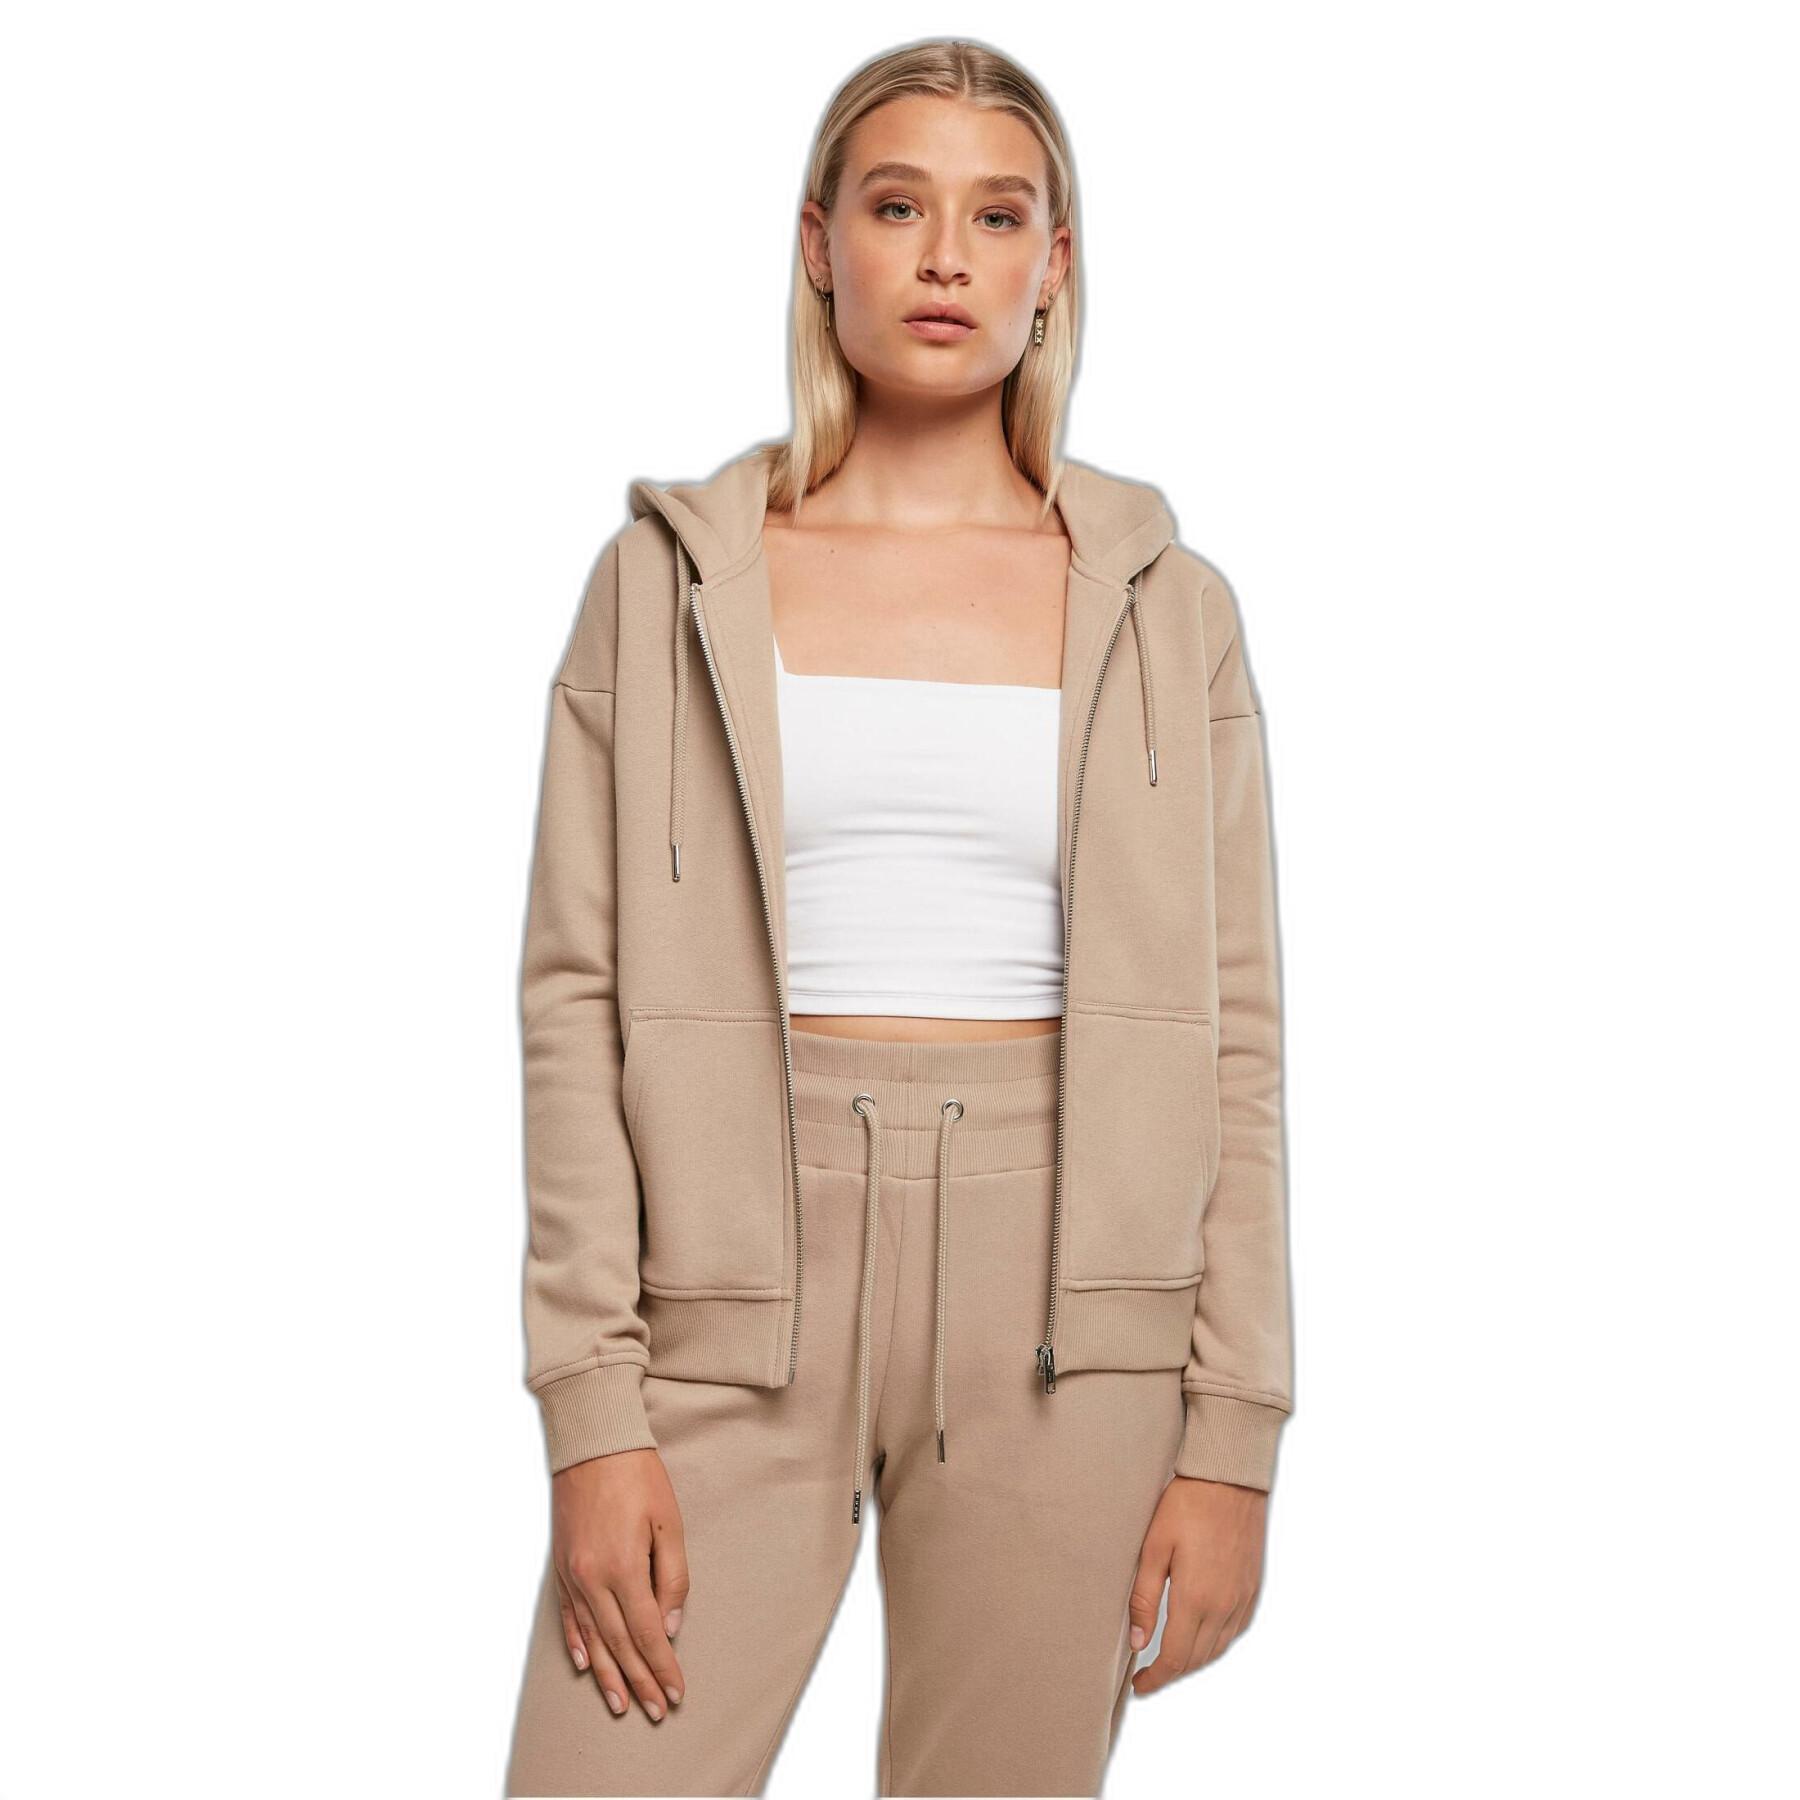 Women's zip-up hoodie Urban Classics Organic Terry GT